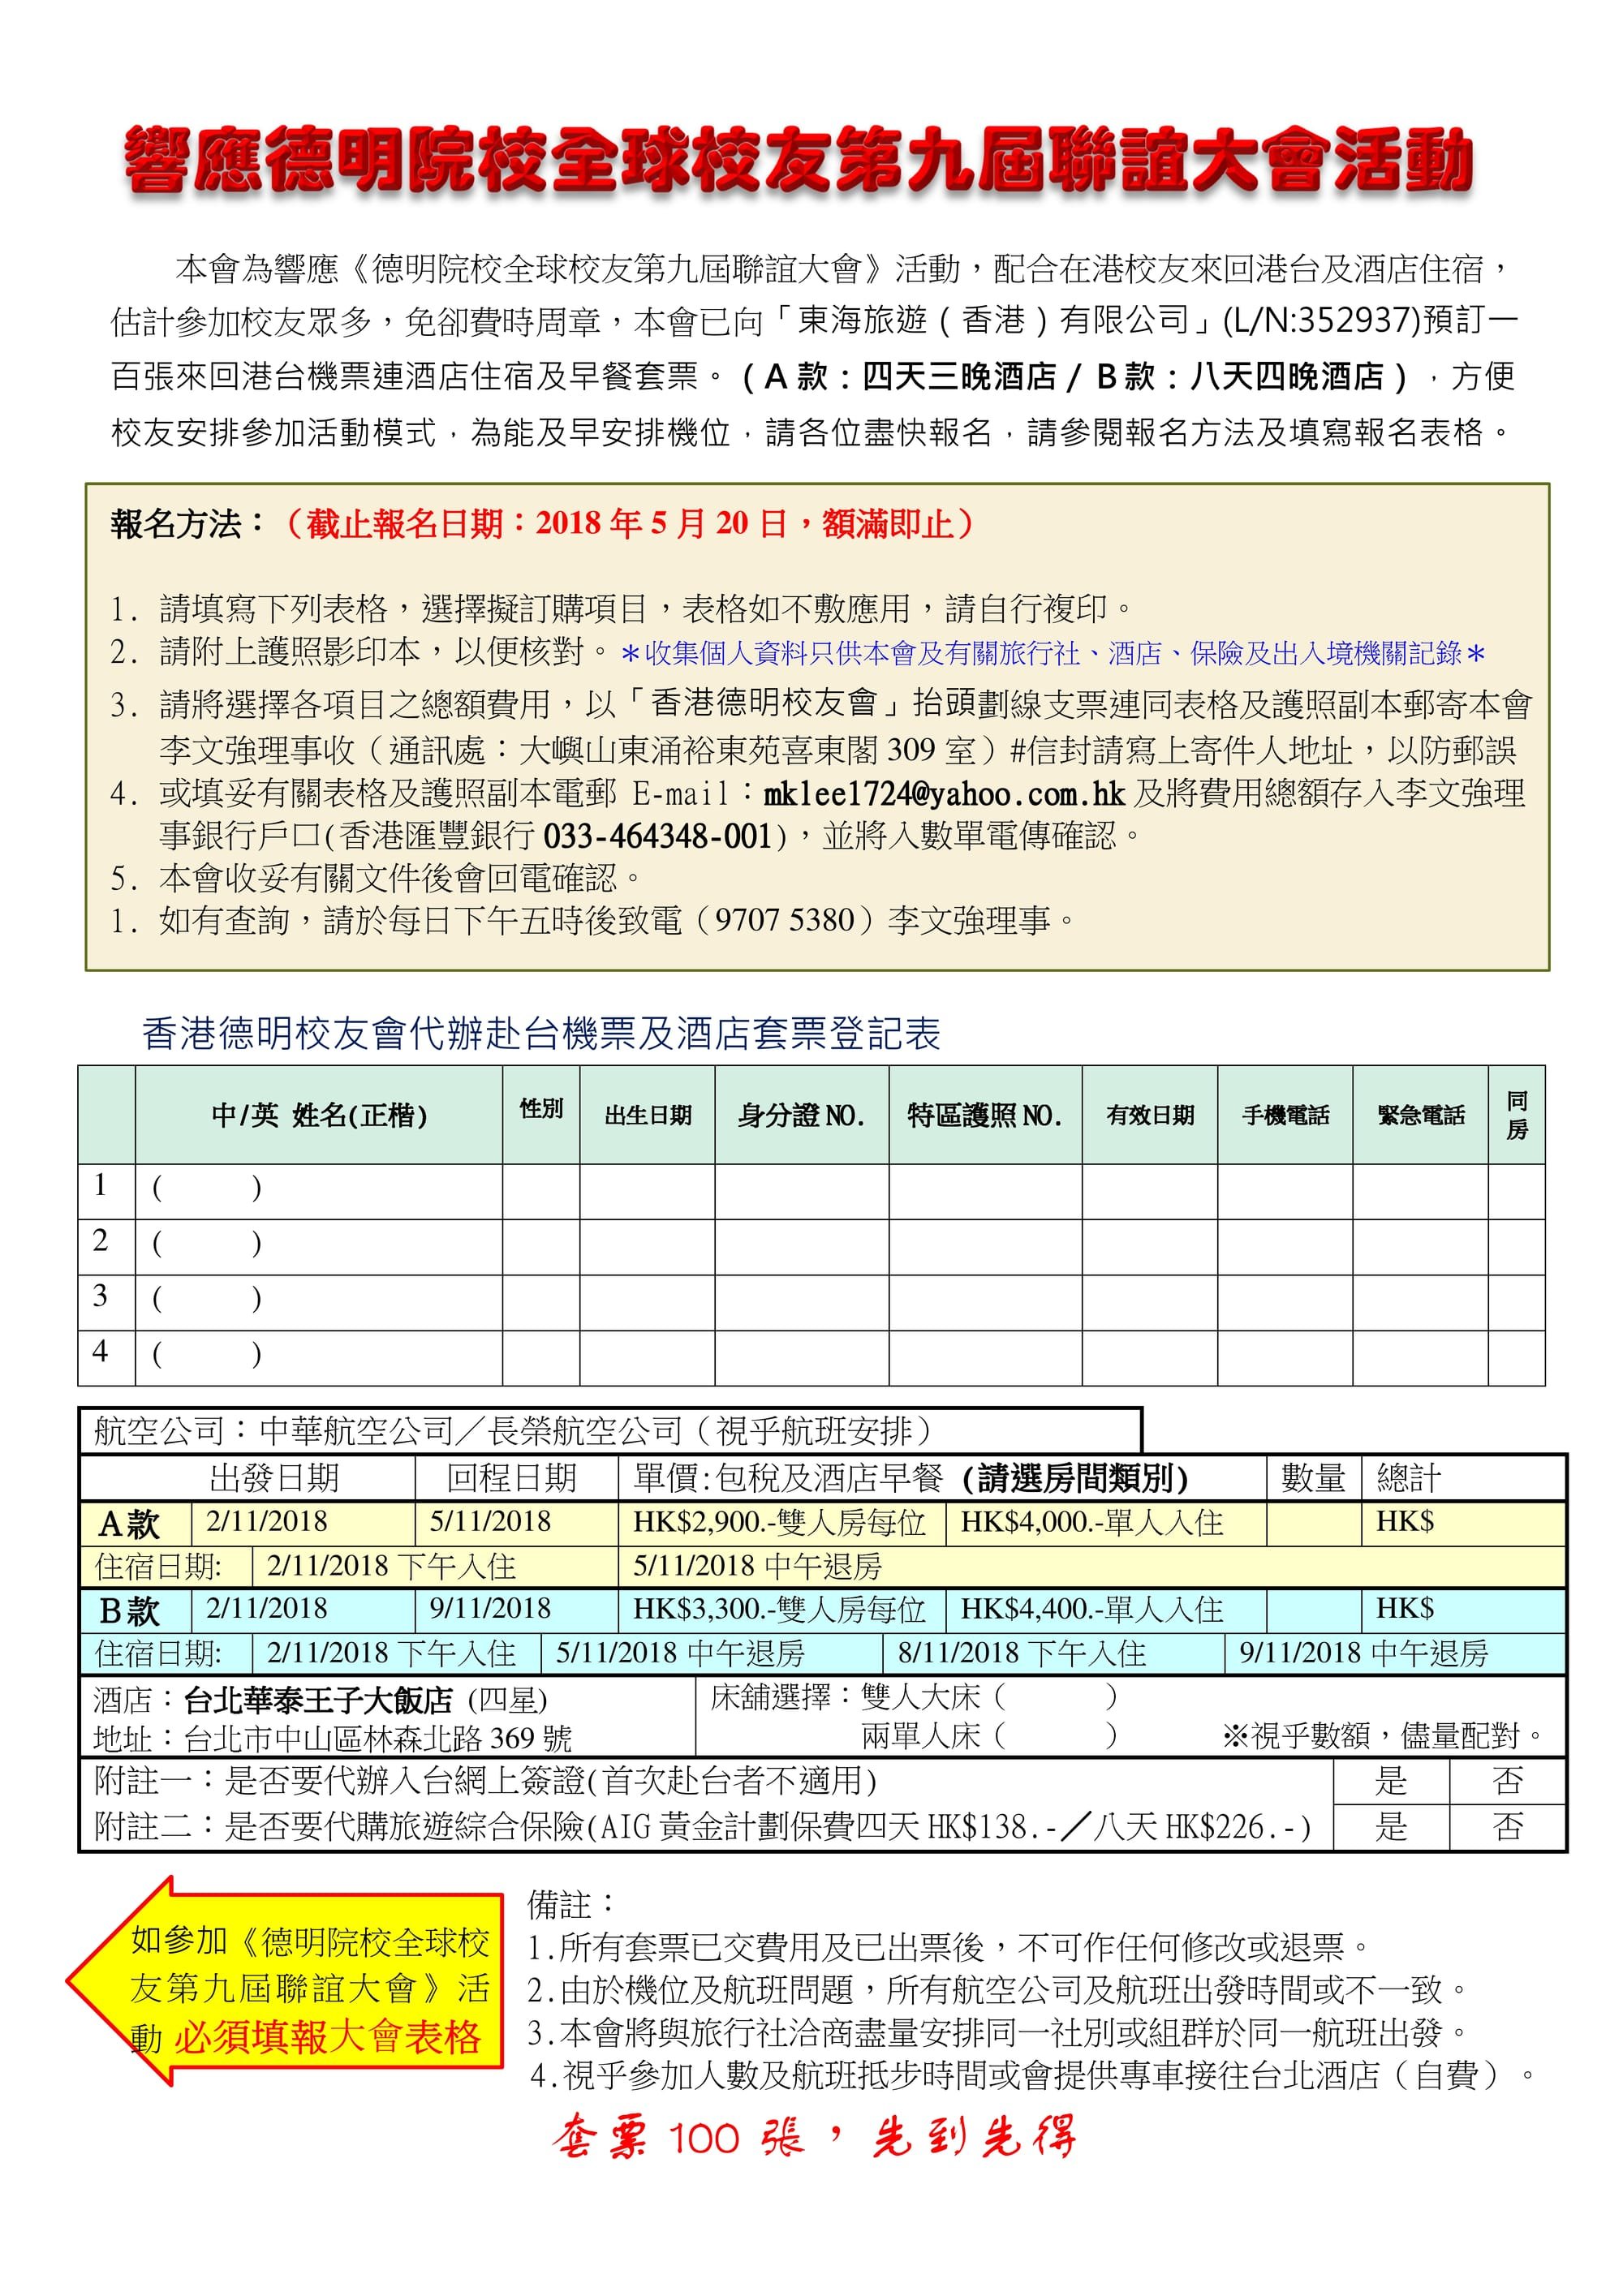 香港校友會安排發售一百張來回港台機票連酒店住宿及早餐套票